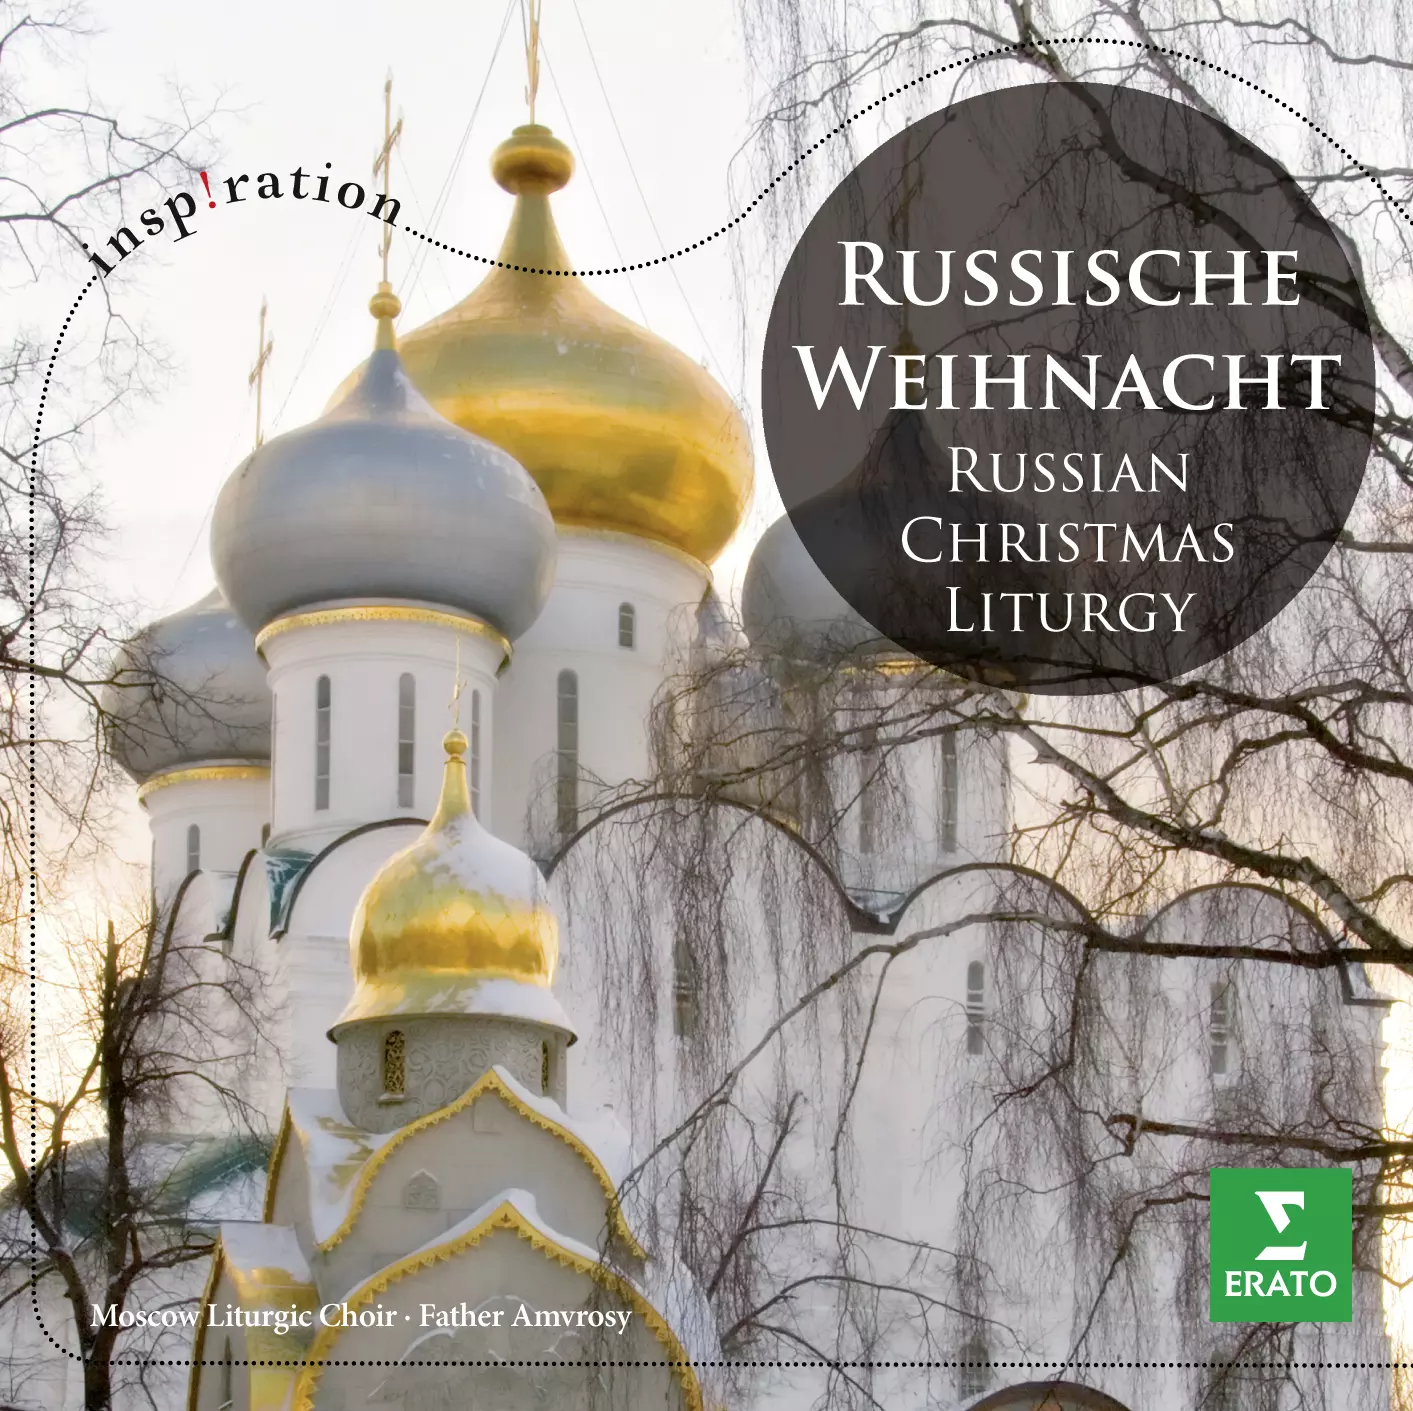 Russische Weihnacht / Russian Christmas Liturgy